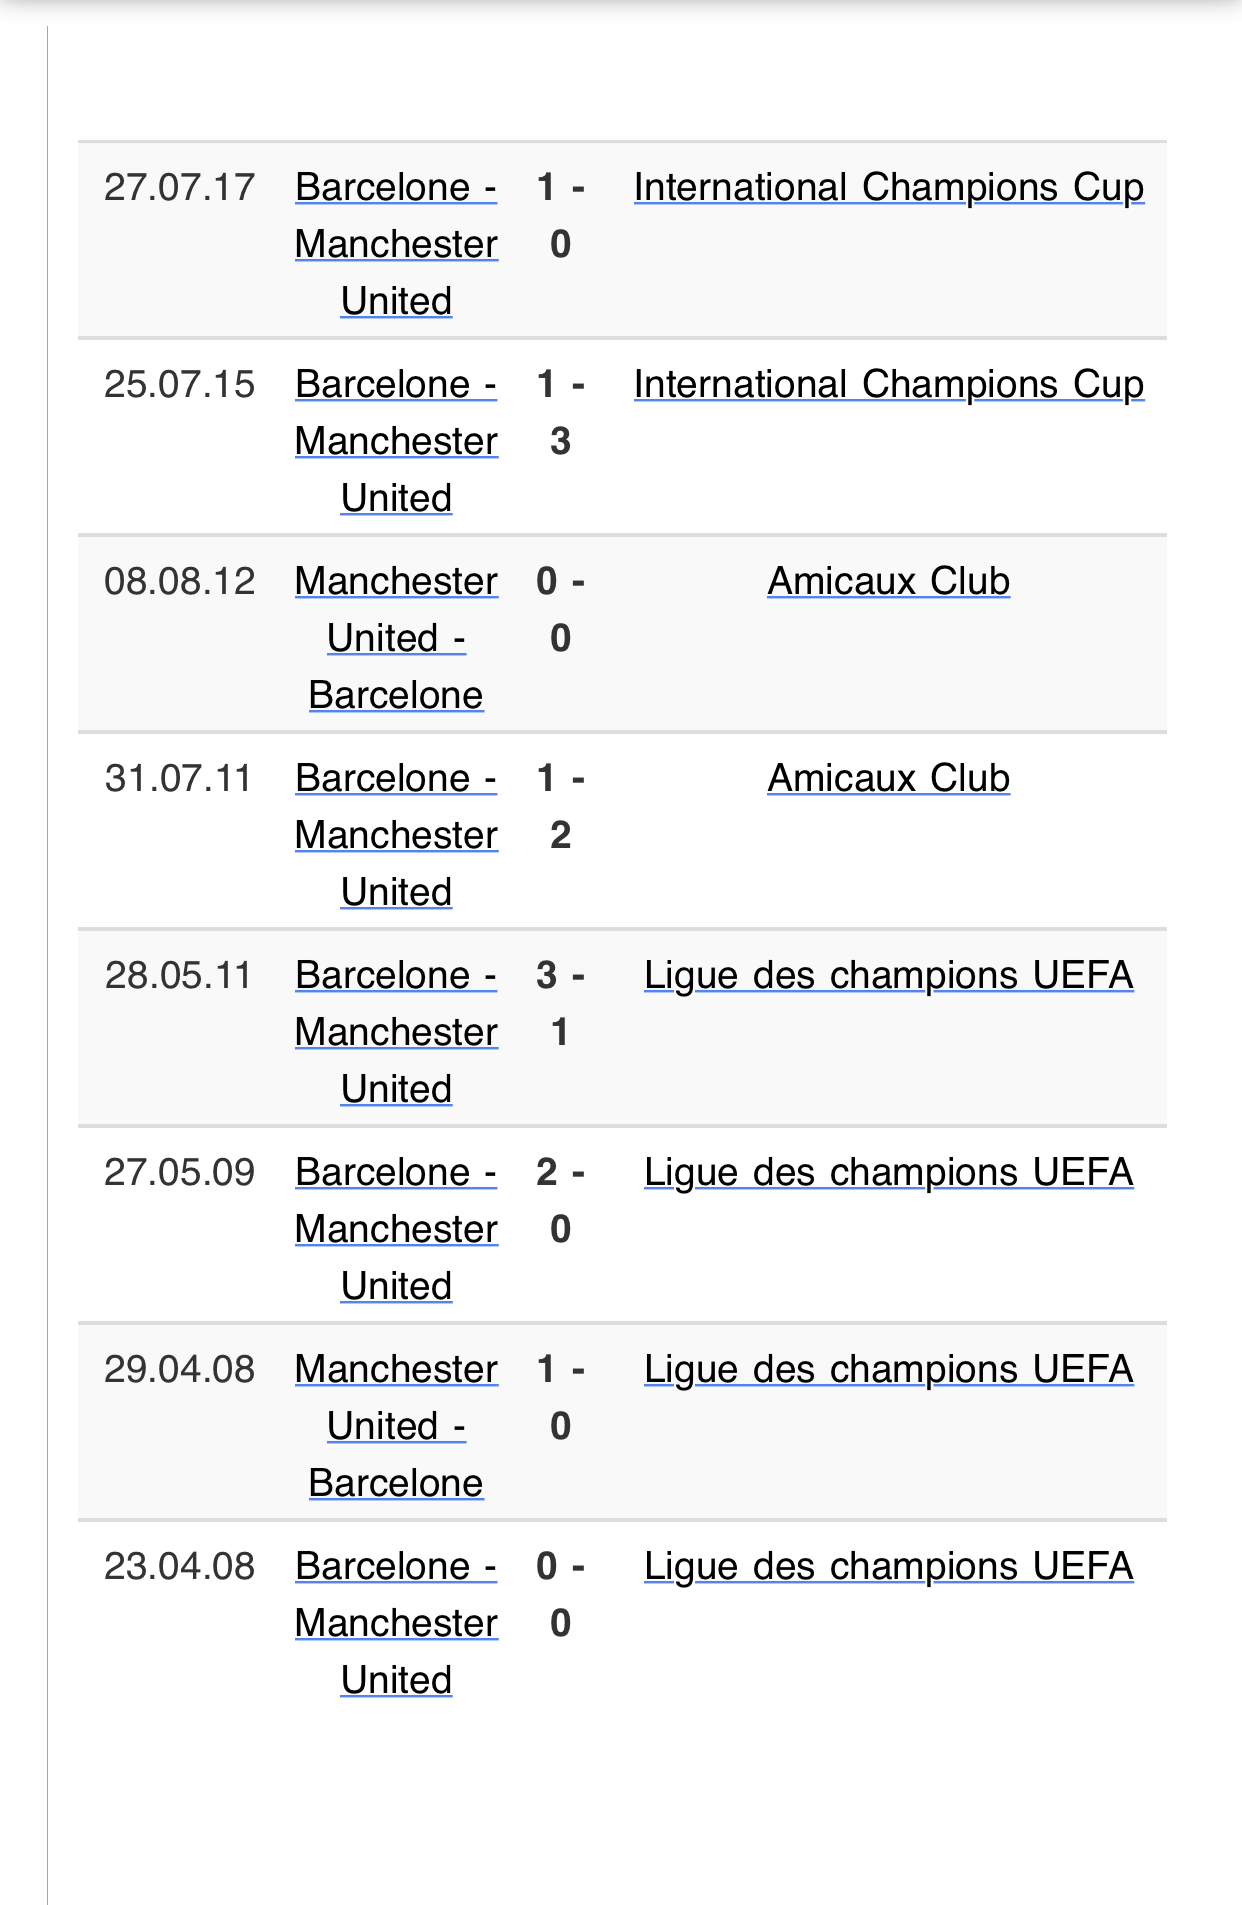 Historique des matches Barca / Manchester United entre 2008 et 2017 / 8 matches, 15 buts marqués, 6 victoires et 2 nuls